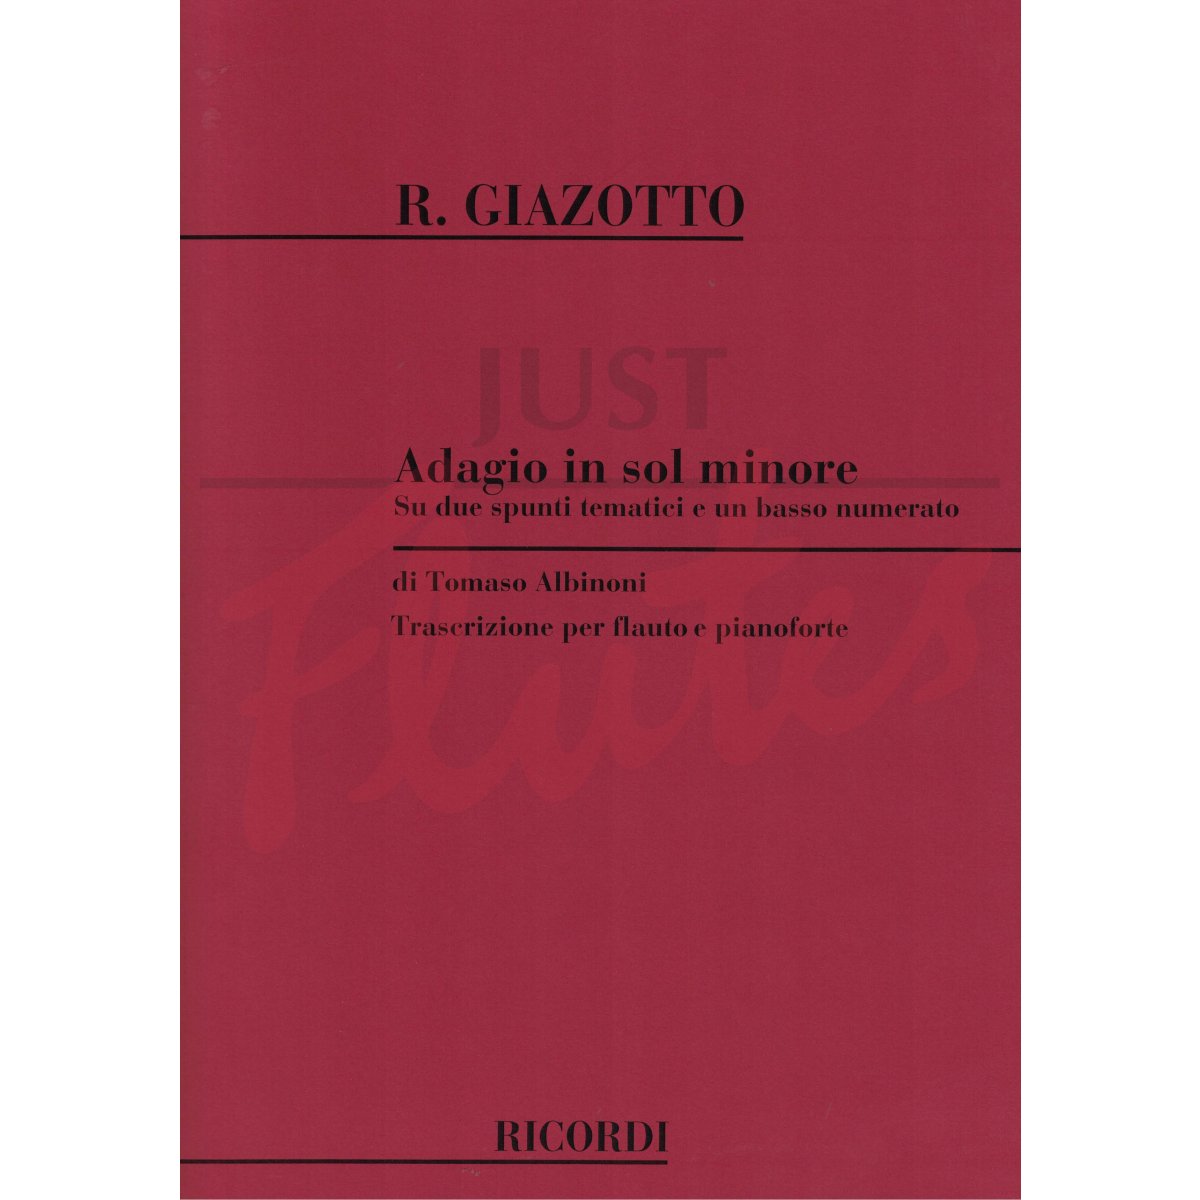 Adagio in G minor (attributed to Albinoni) for Flute and Piano